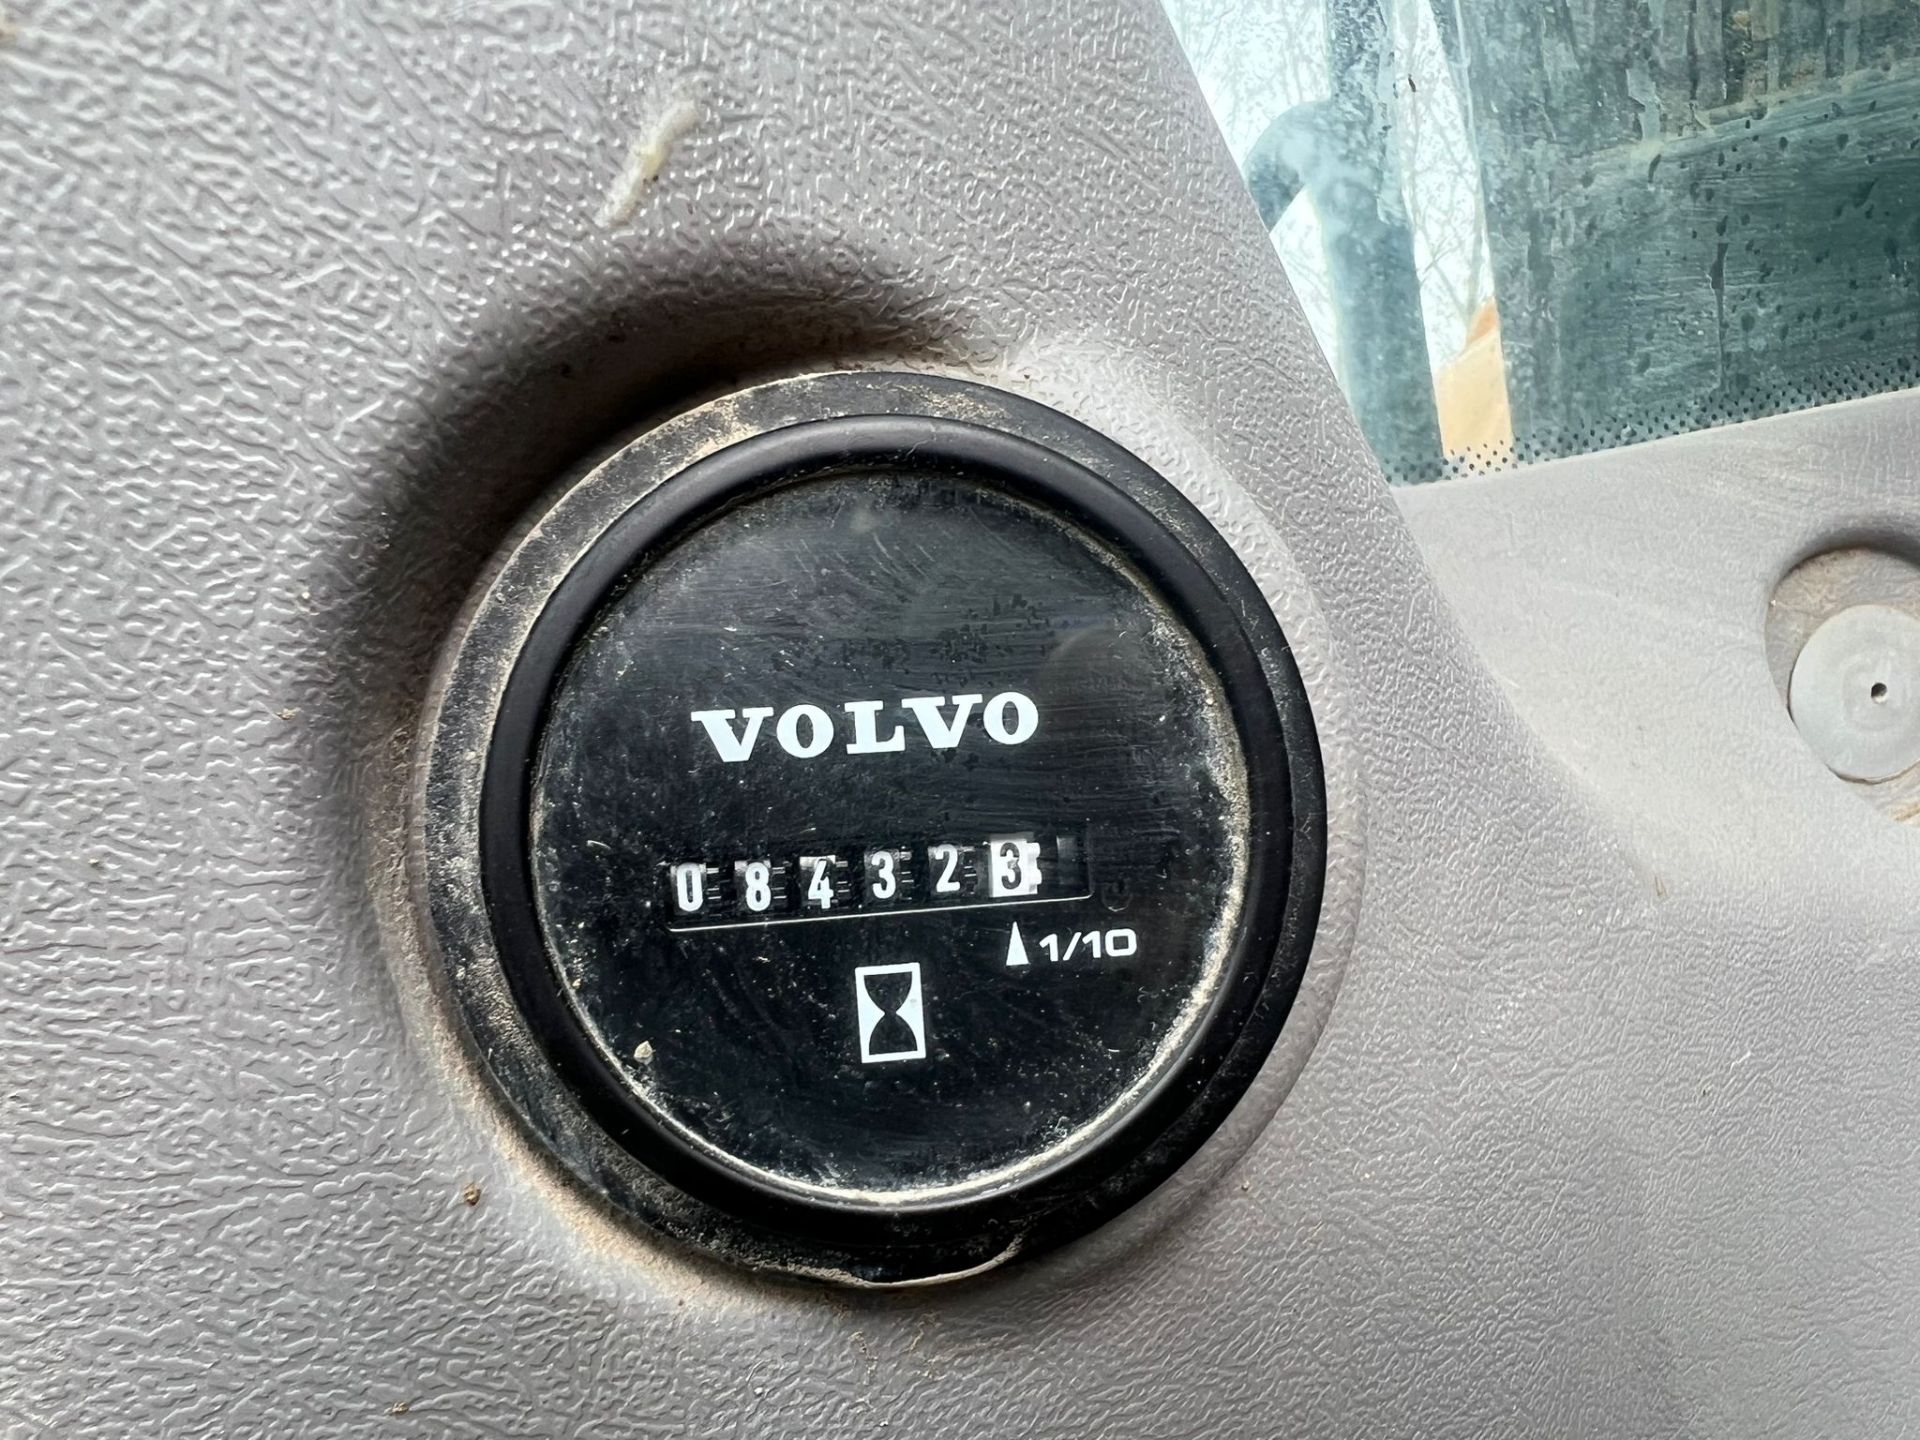 2015 Volvo EC140D 14 Tonne Excavator *PLUS VAT* - Image 13 of 13